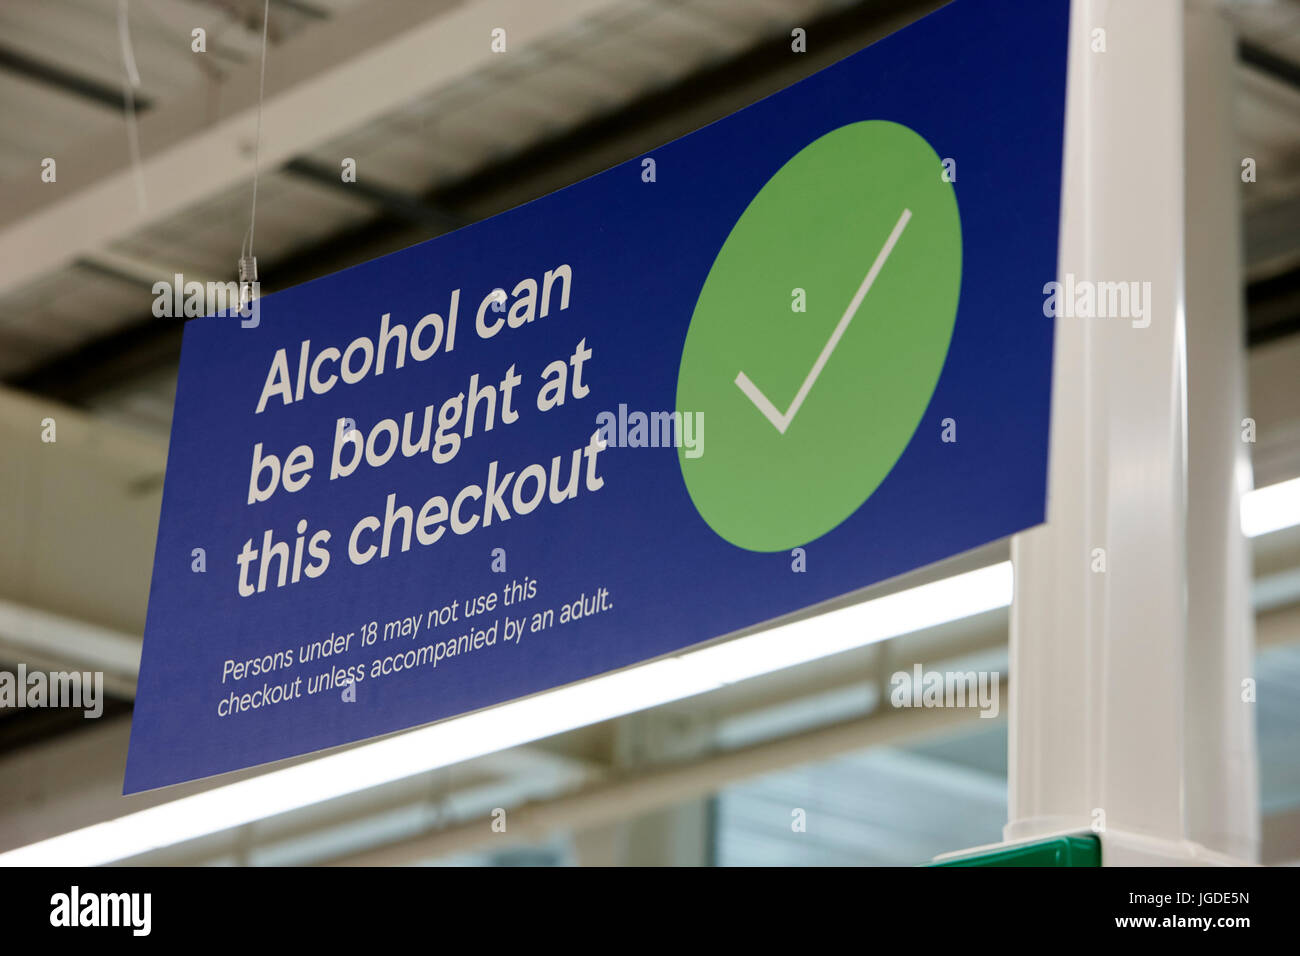 L'alcol può essere acquistato in questo segno di checkout in un supermercato Tesco Foto Stock